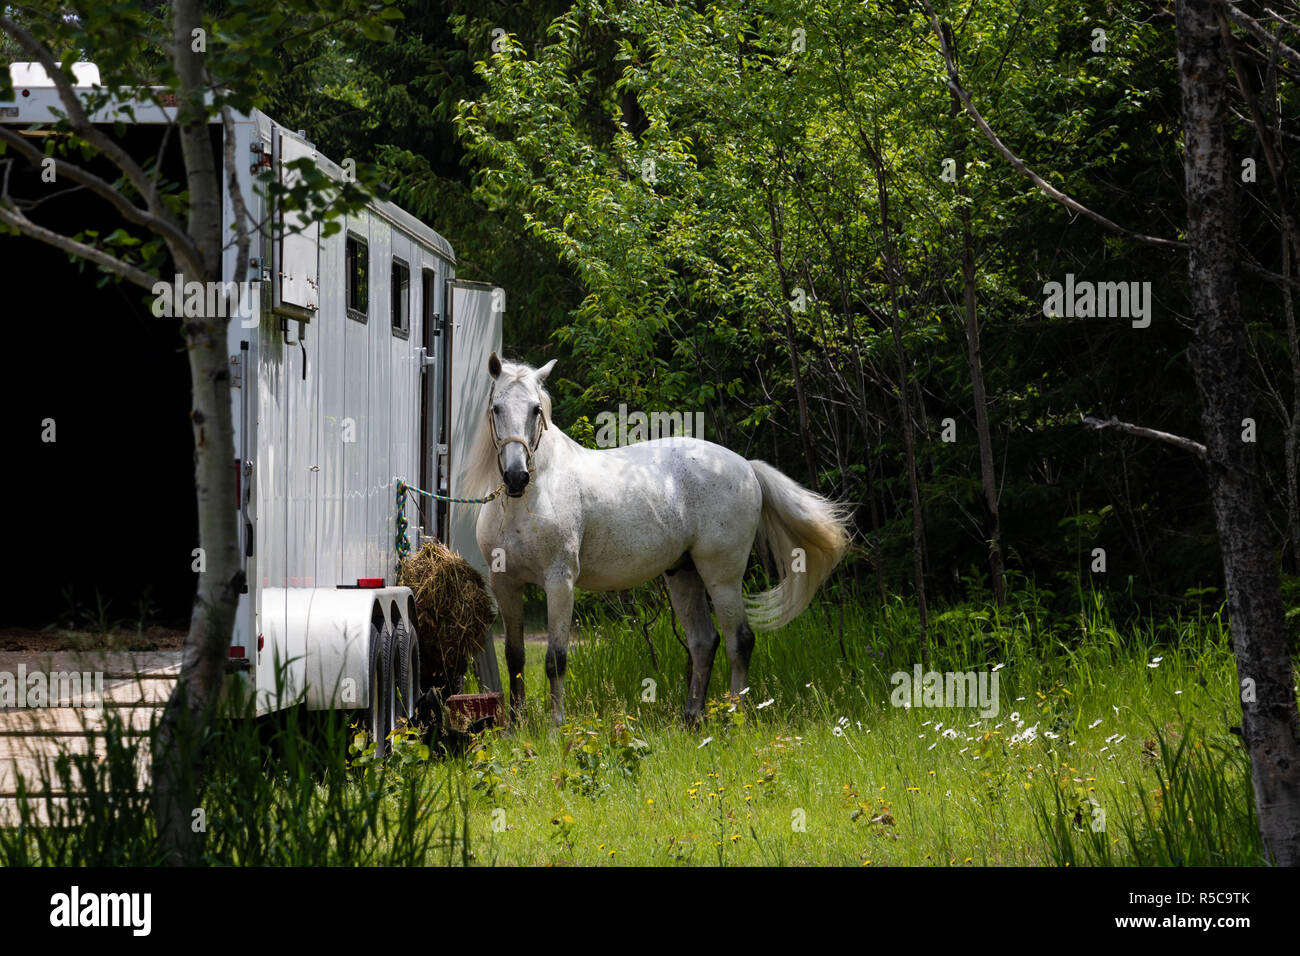 Un cheval attaché à un camion. Une photo prise à Baie St-Paul dans la région de Québec, Canada à l'été. Banque D'Images